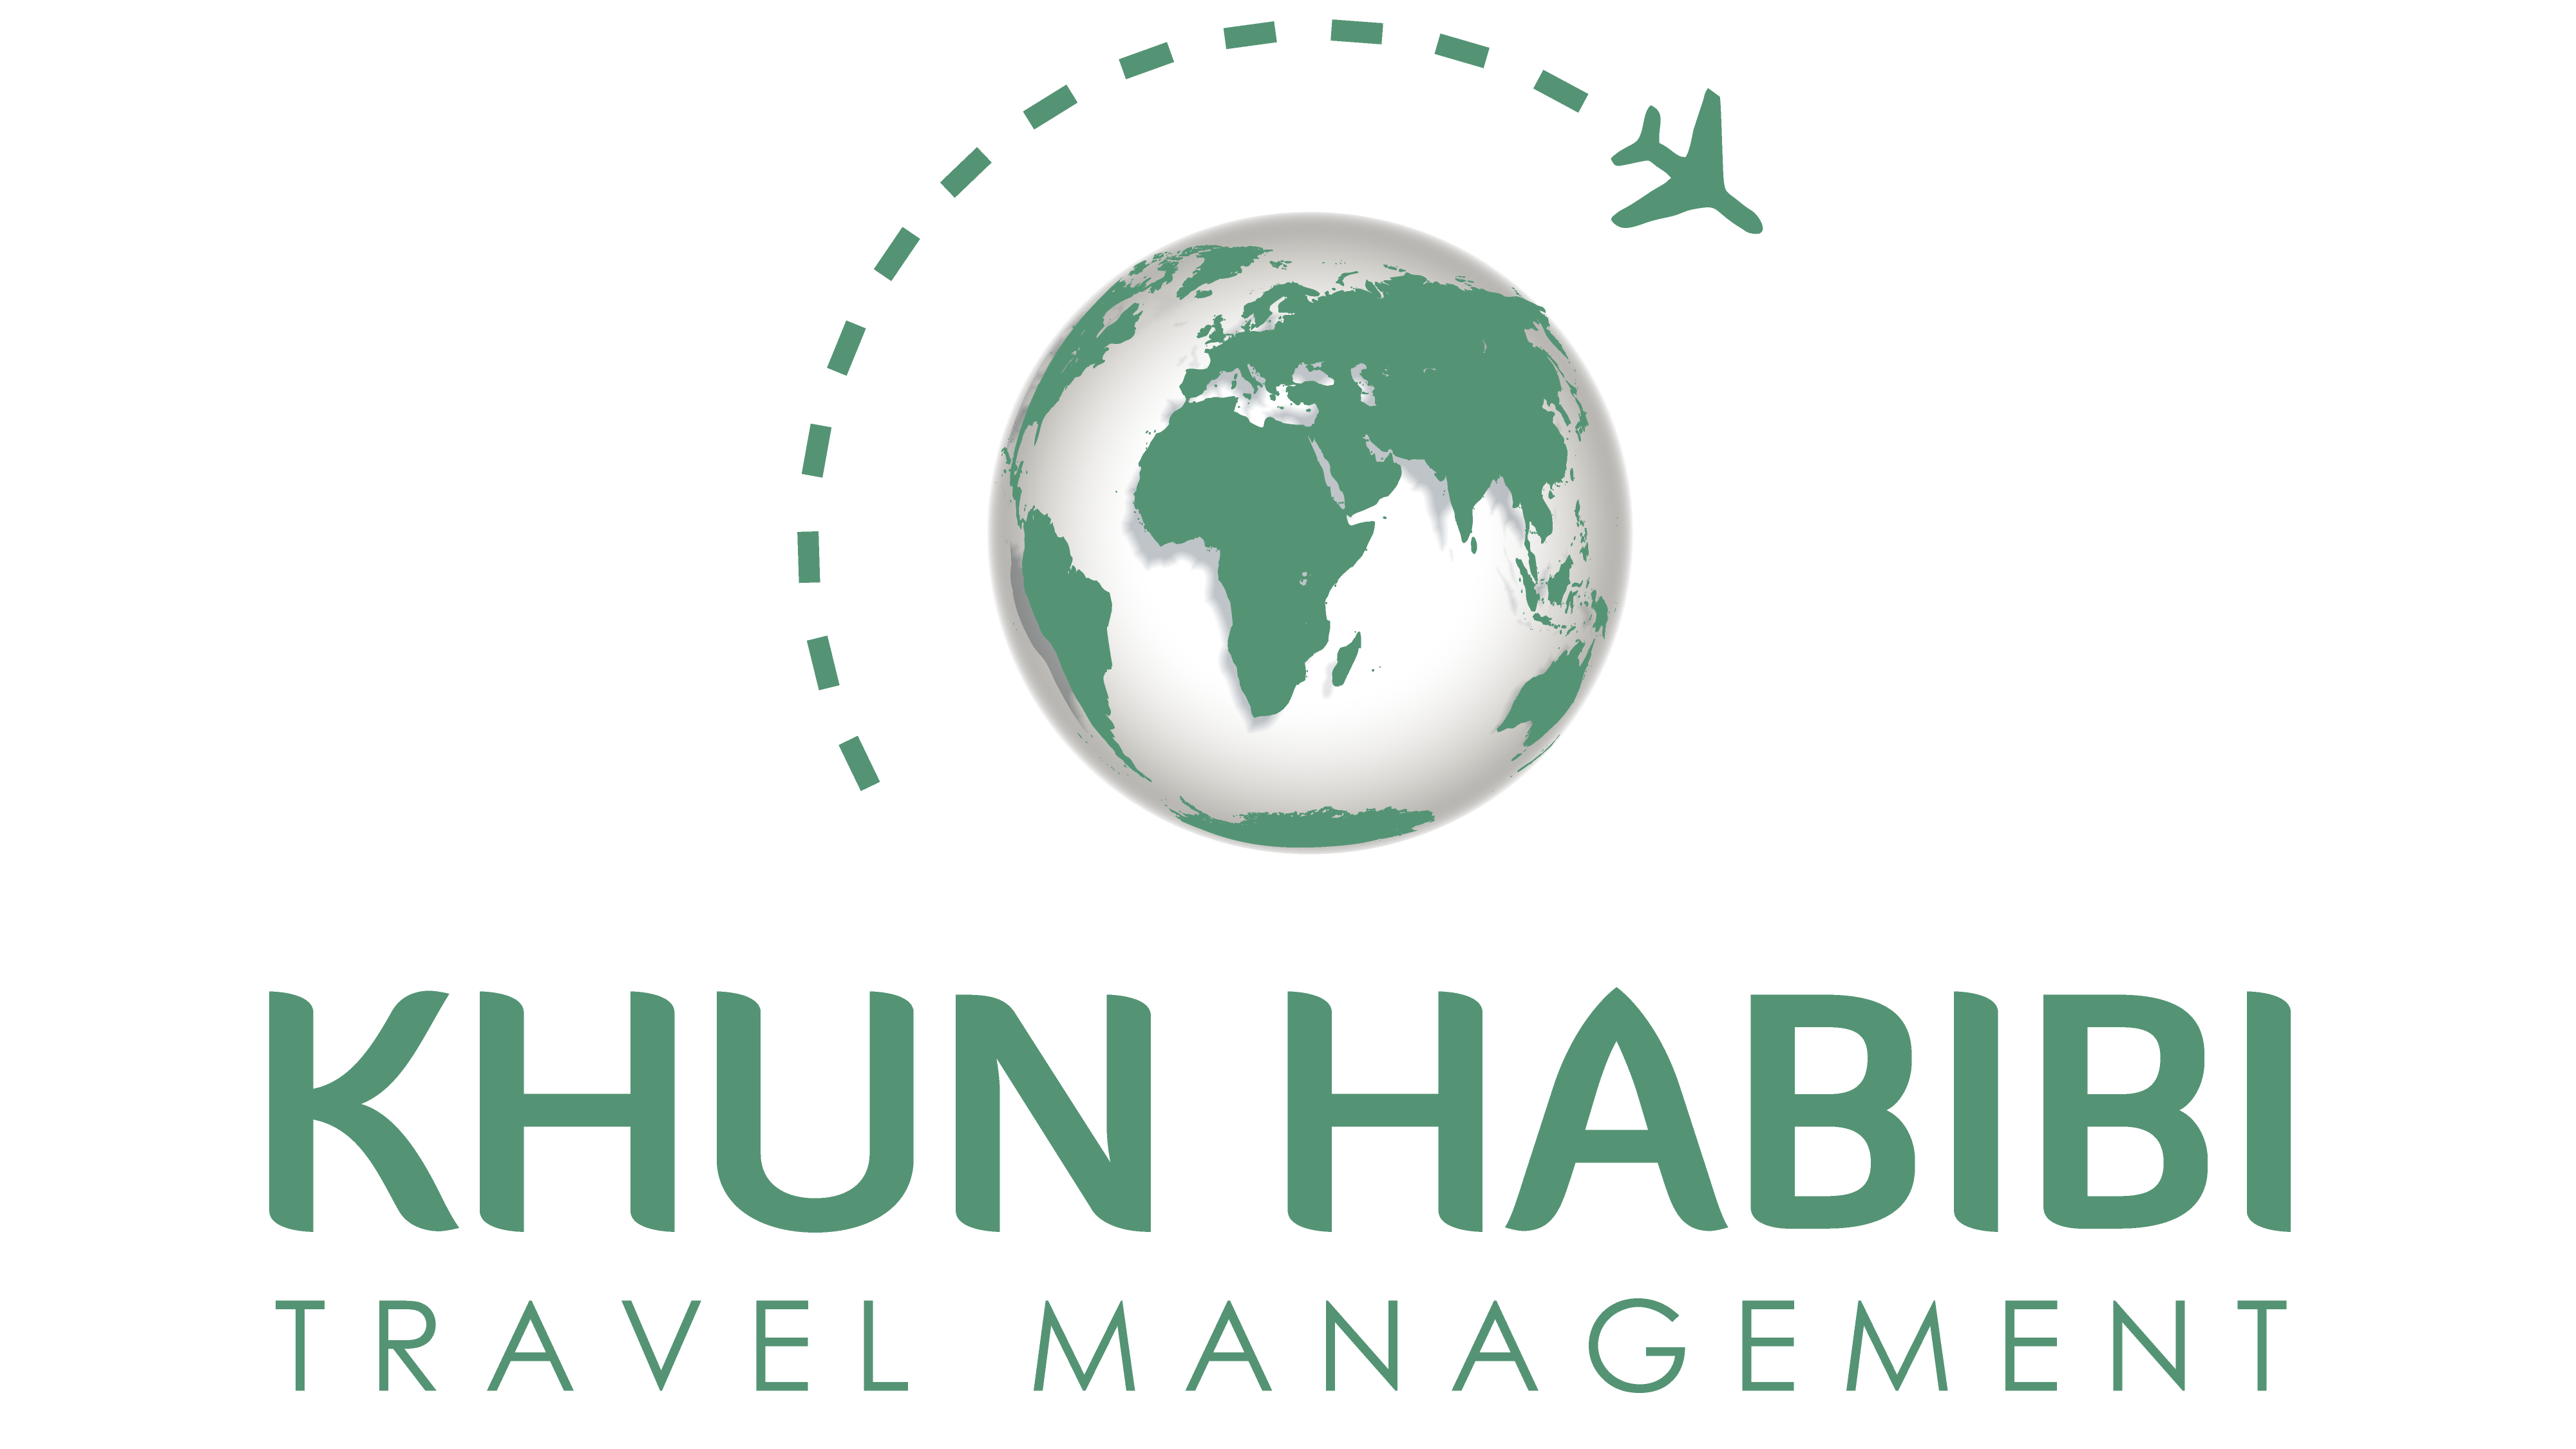 KHUN HABIBI TRAVEL MANAGEMENT